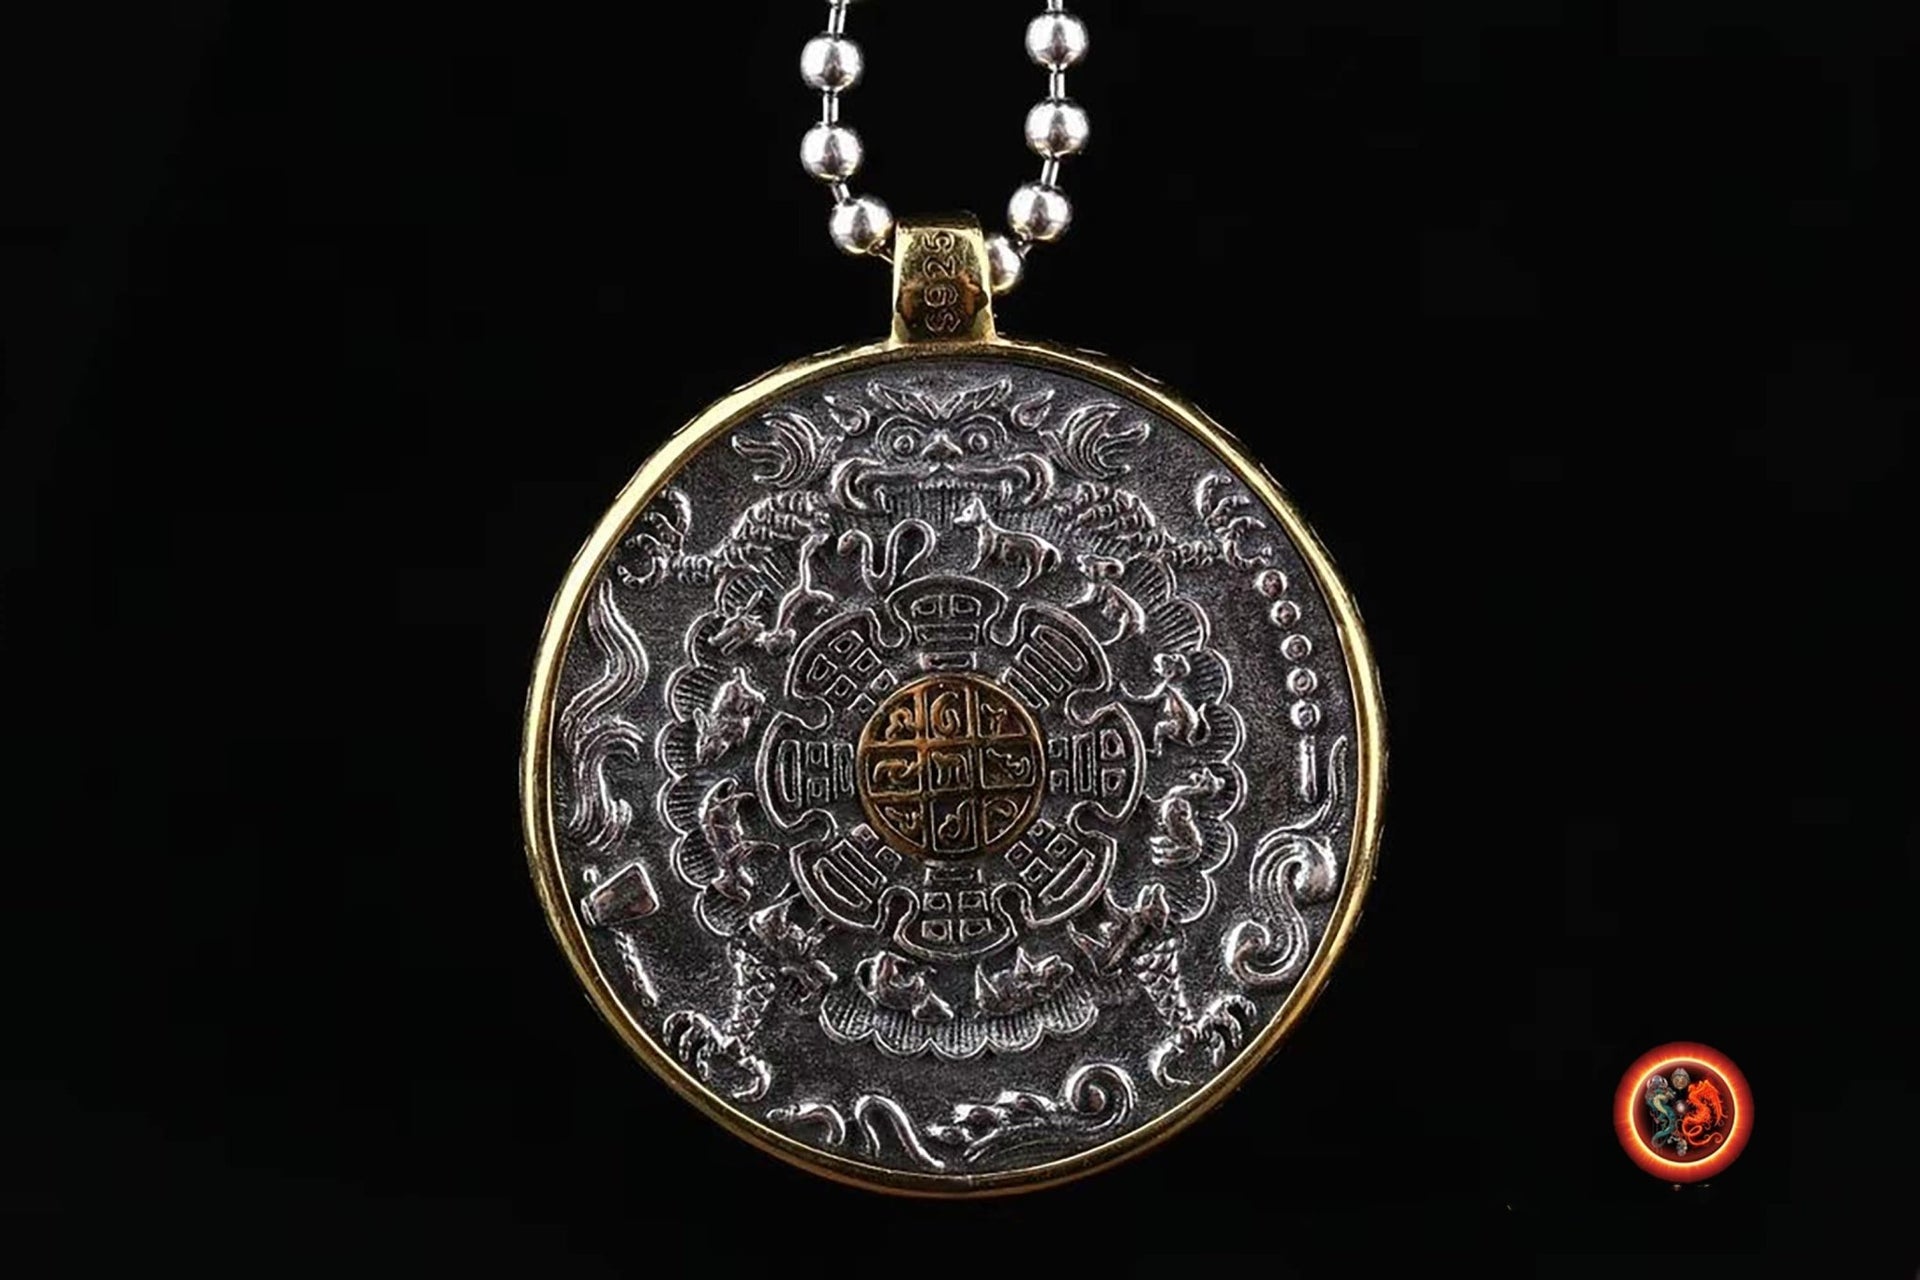 Amulette Tibétaine traditionnelle - Protection de la santé